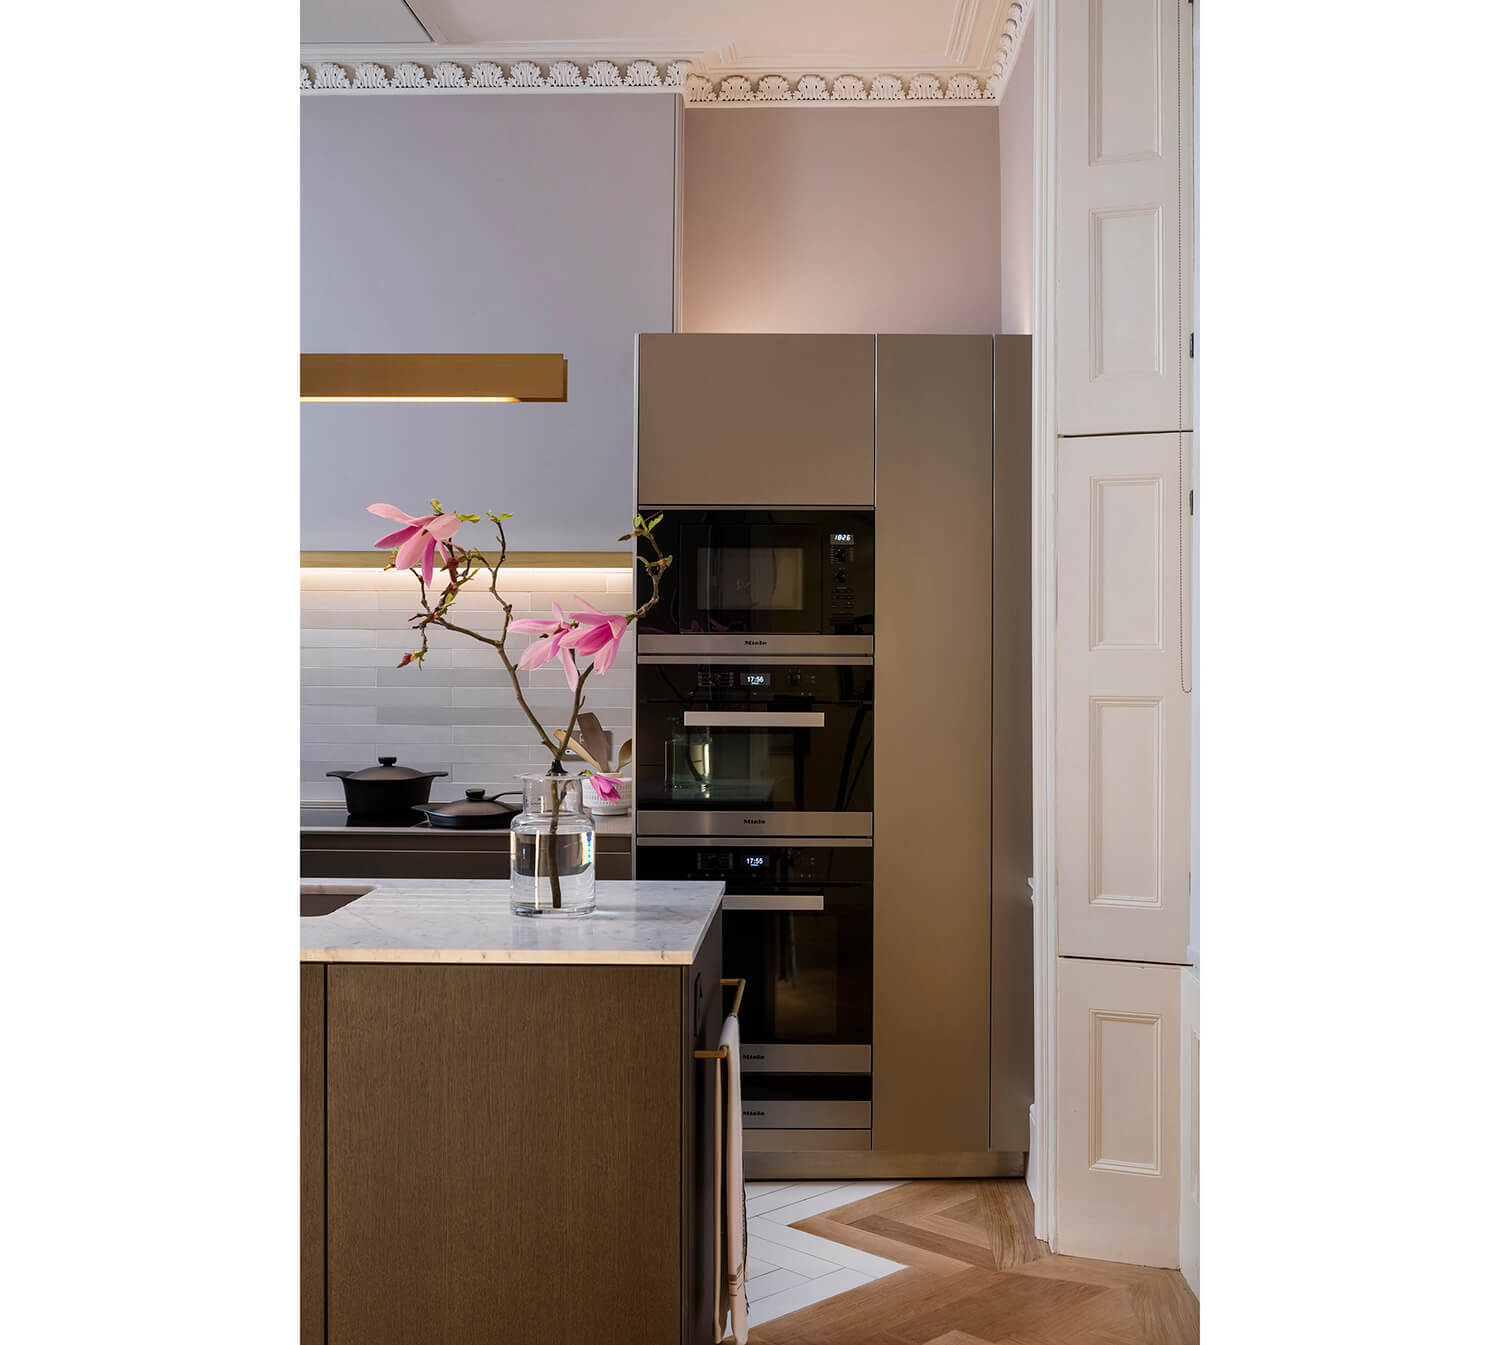 enerphit passivhaus prewett bizley architects kitchen detail.jpg